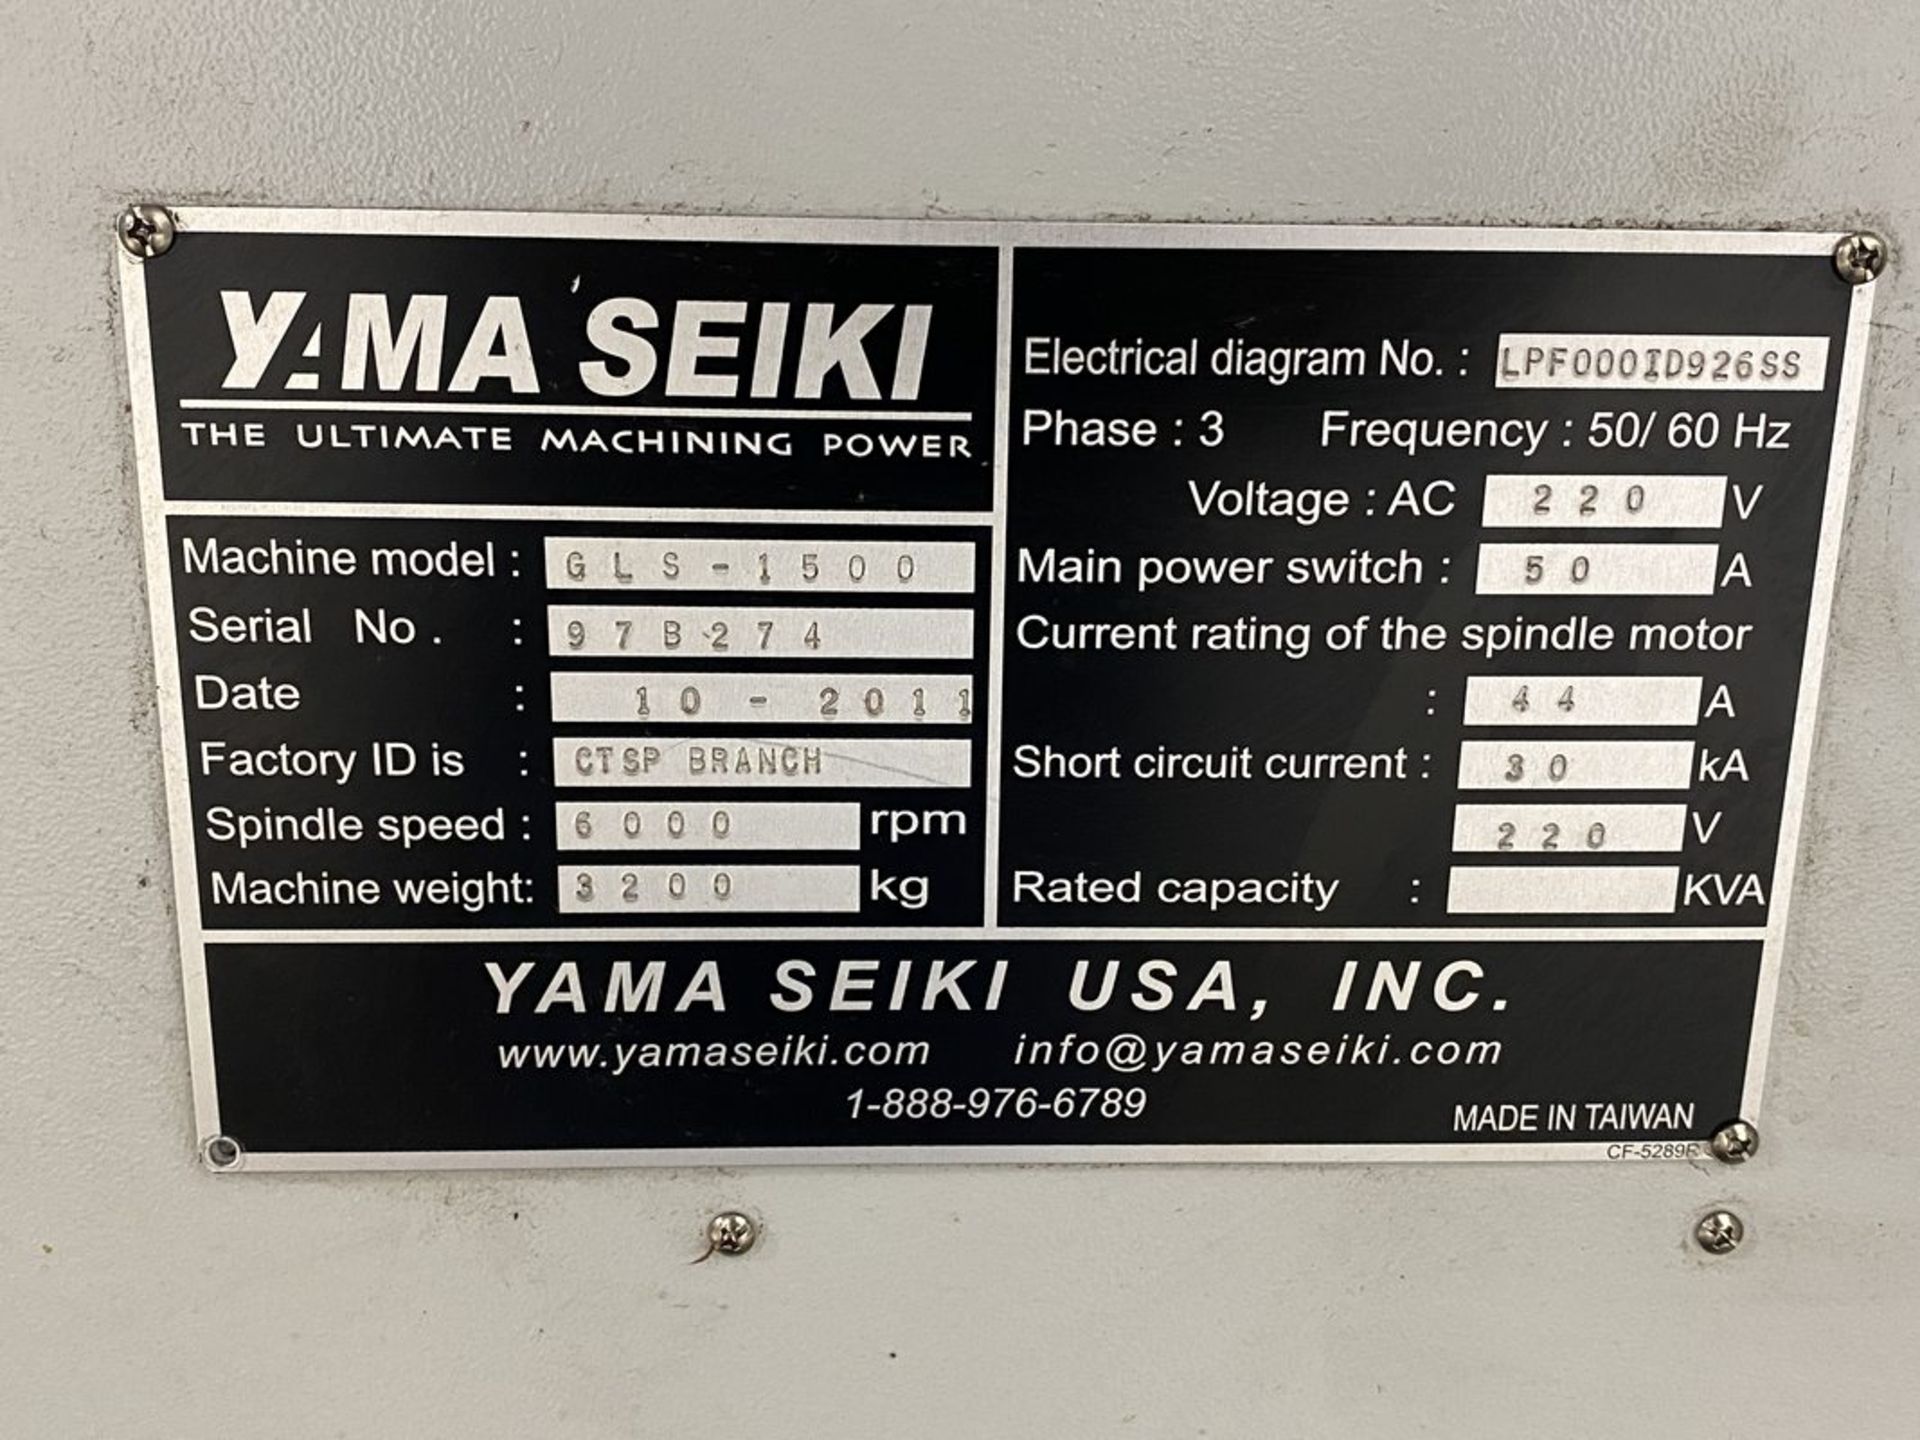 Yama Seiki GLS-1500 CNC Turning Center - Image 24 of 24